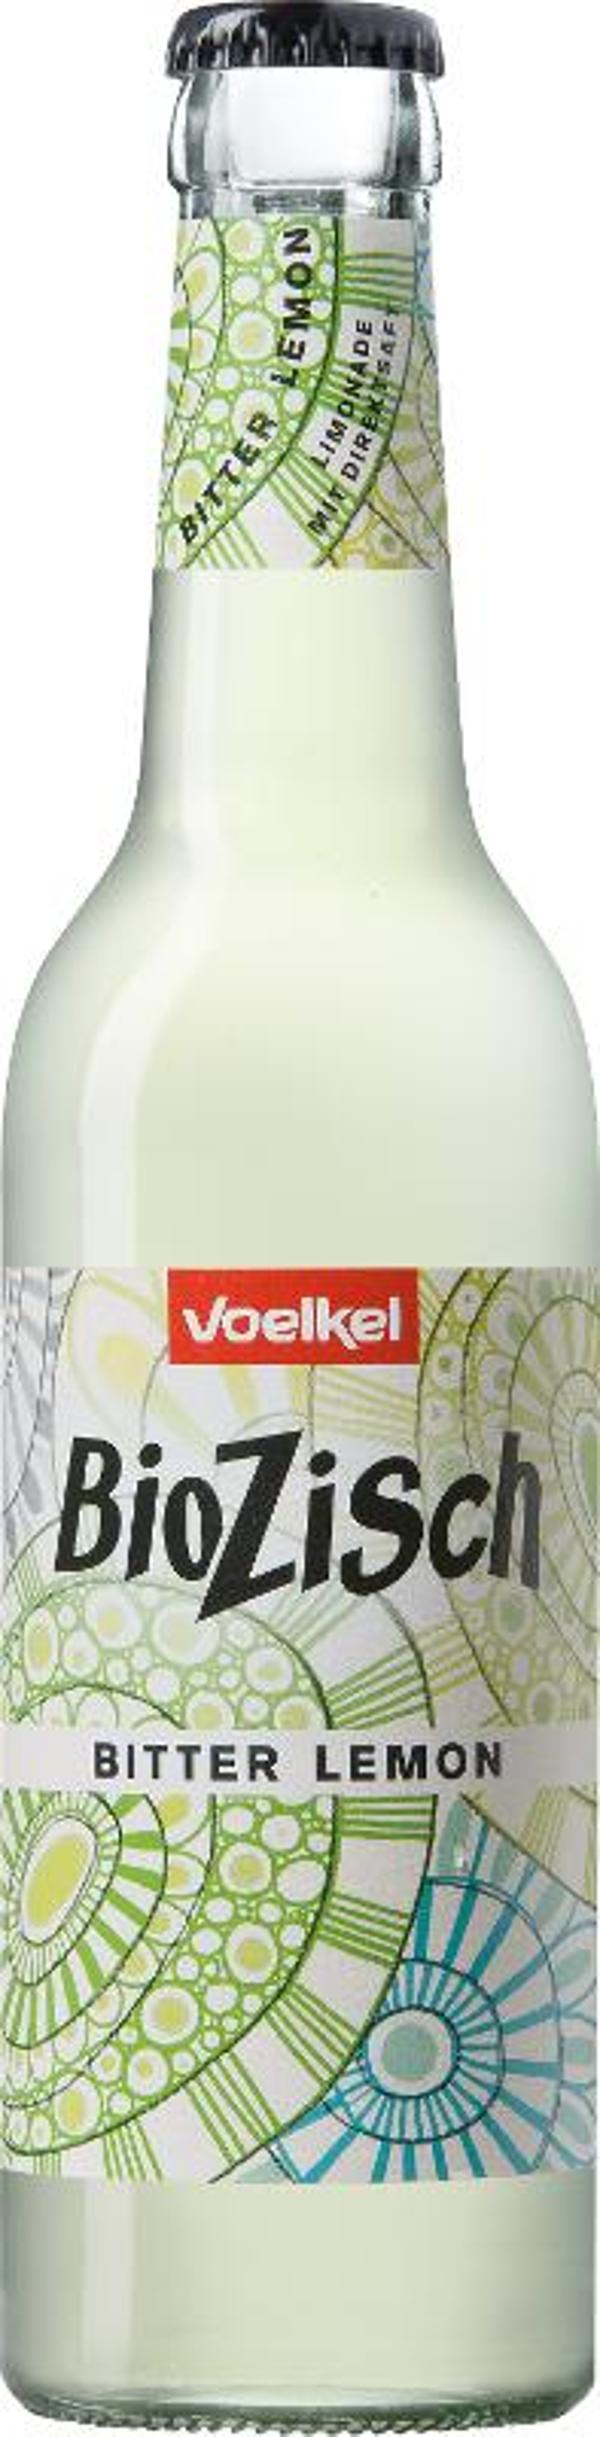 Produktfoto zu Bio Zisch - Bitter Lemon